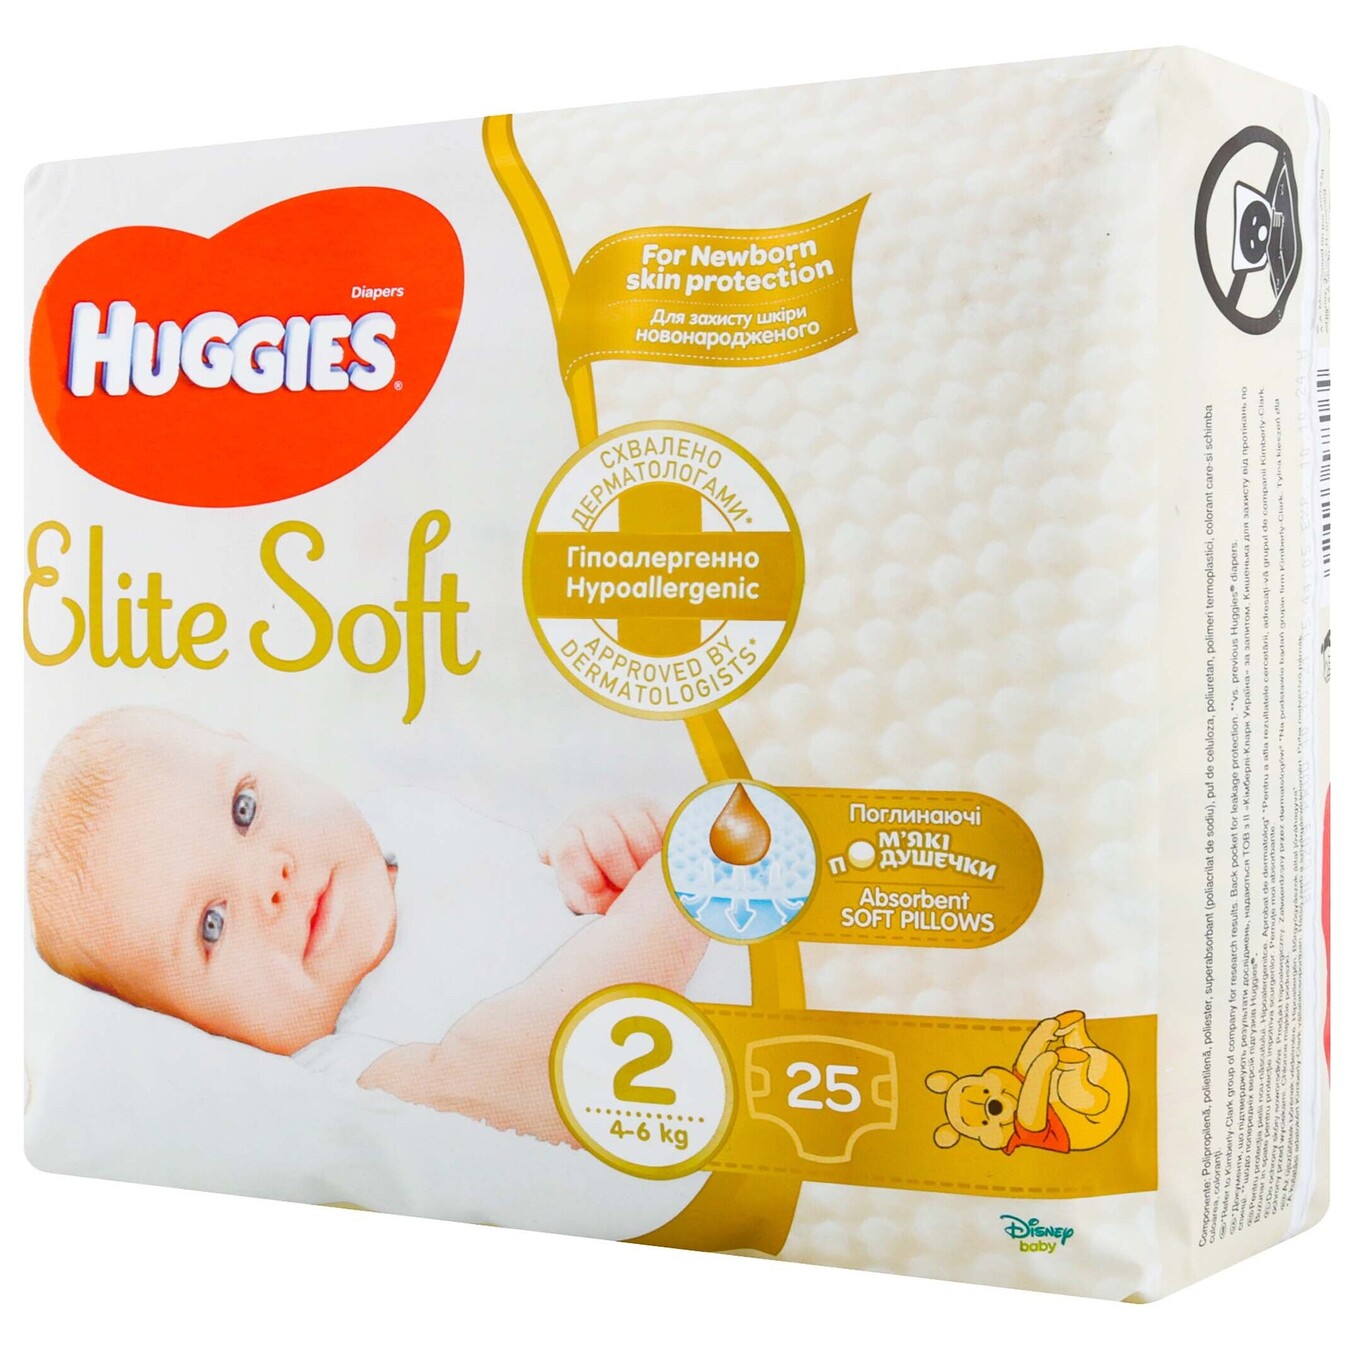 Huggies® Elite soft sauskelnės - švelni apsauga! on Vimeo